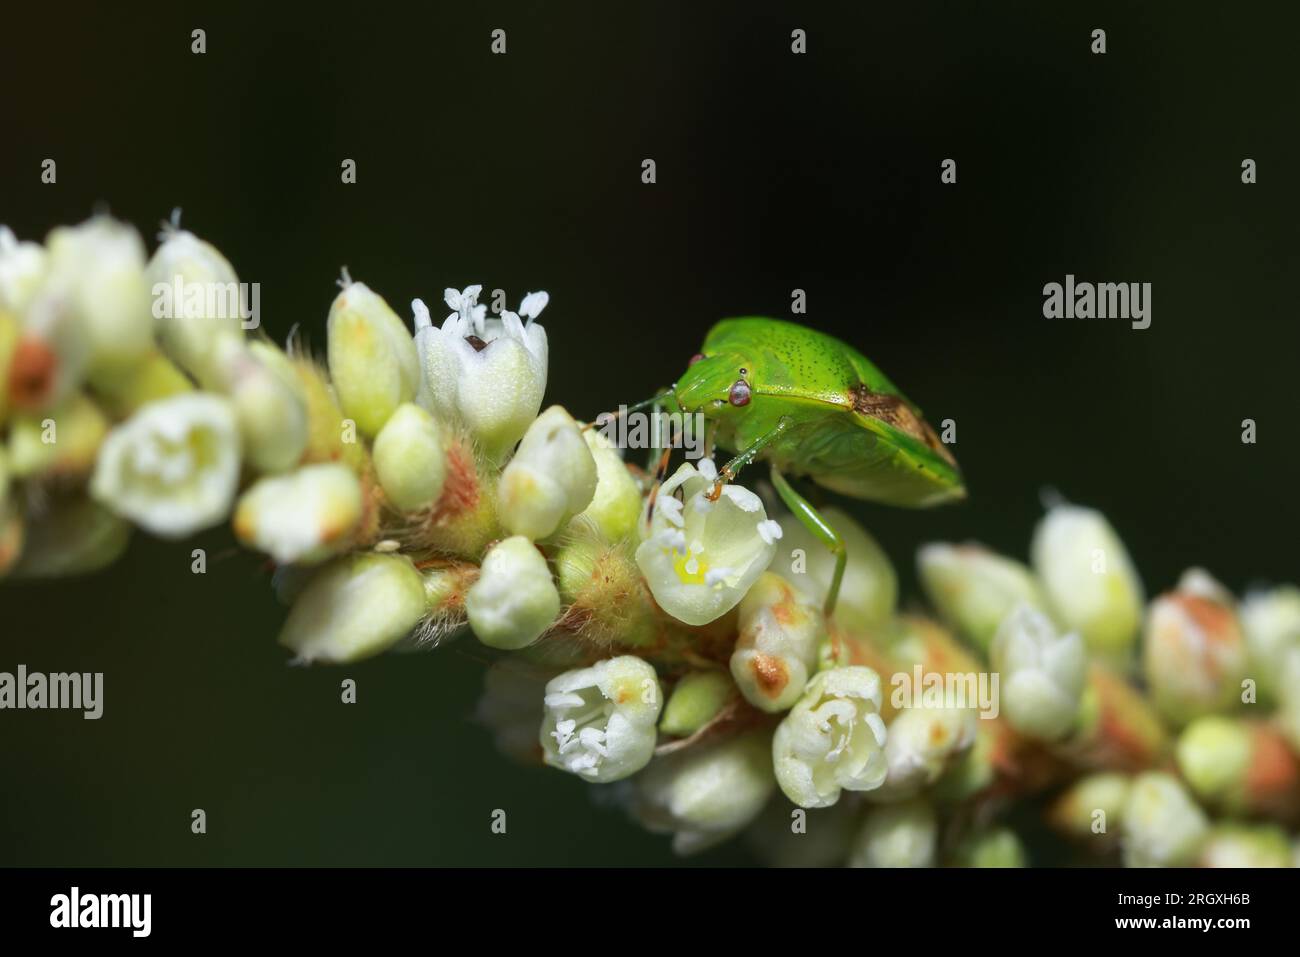 Ein farbiger Käfer auf einer Blume. Dieses Makrofoto wurde aus Bangladesch gemacht. Stockfoto